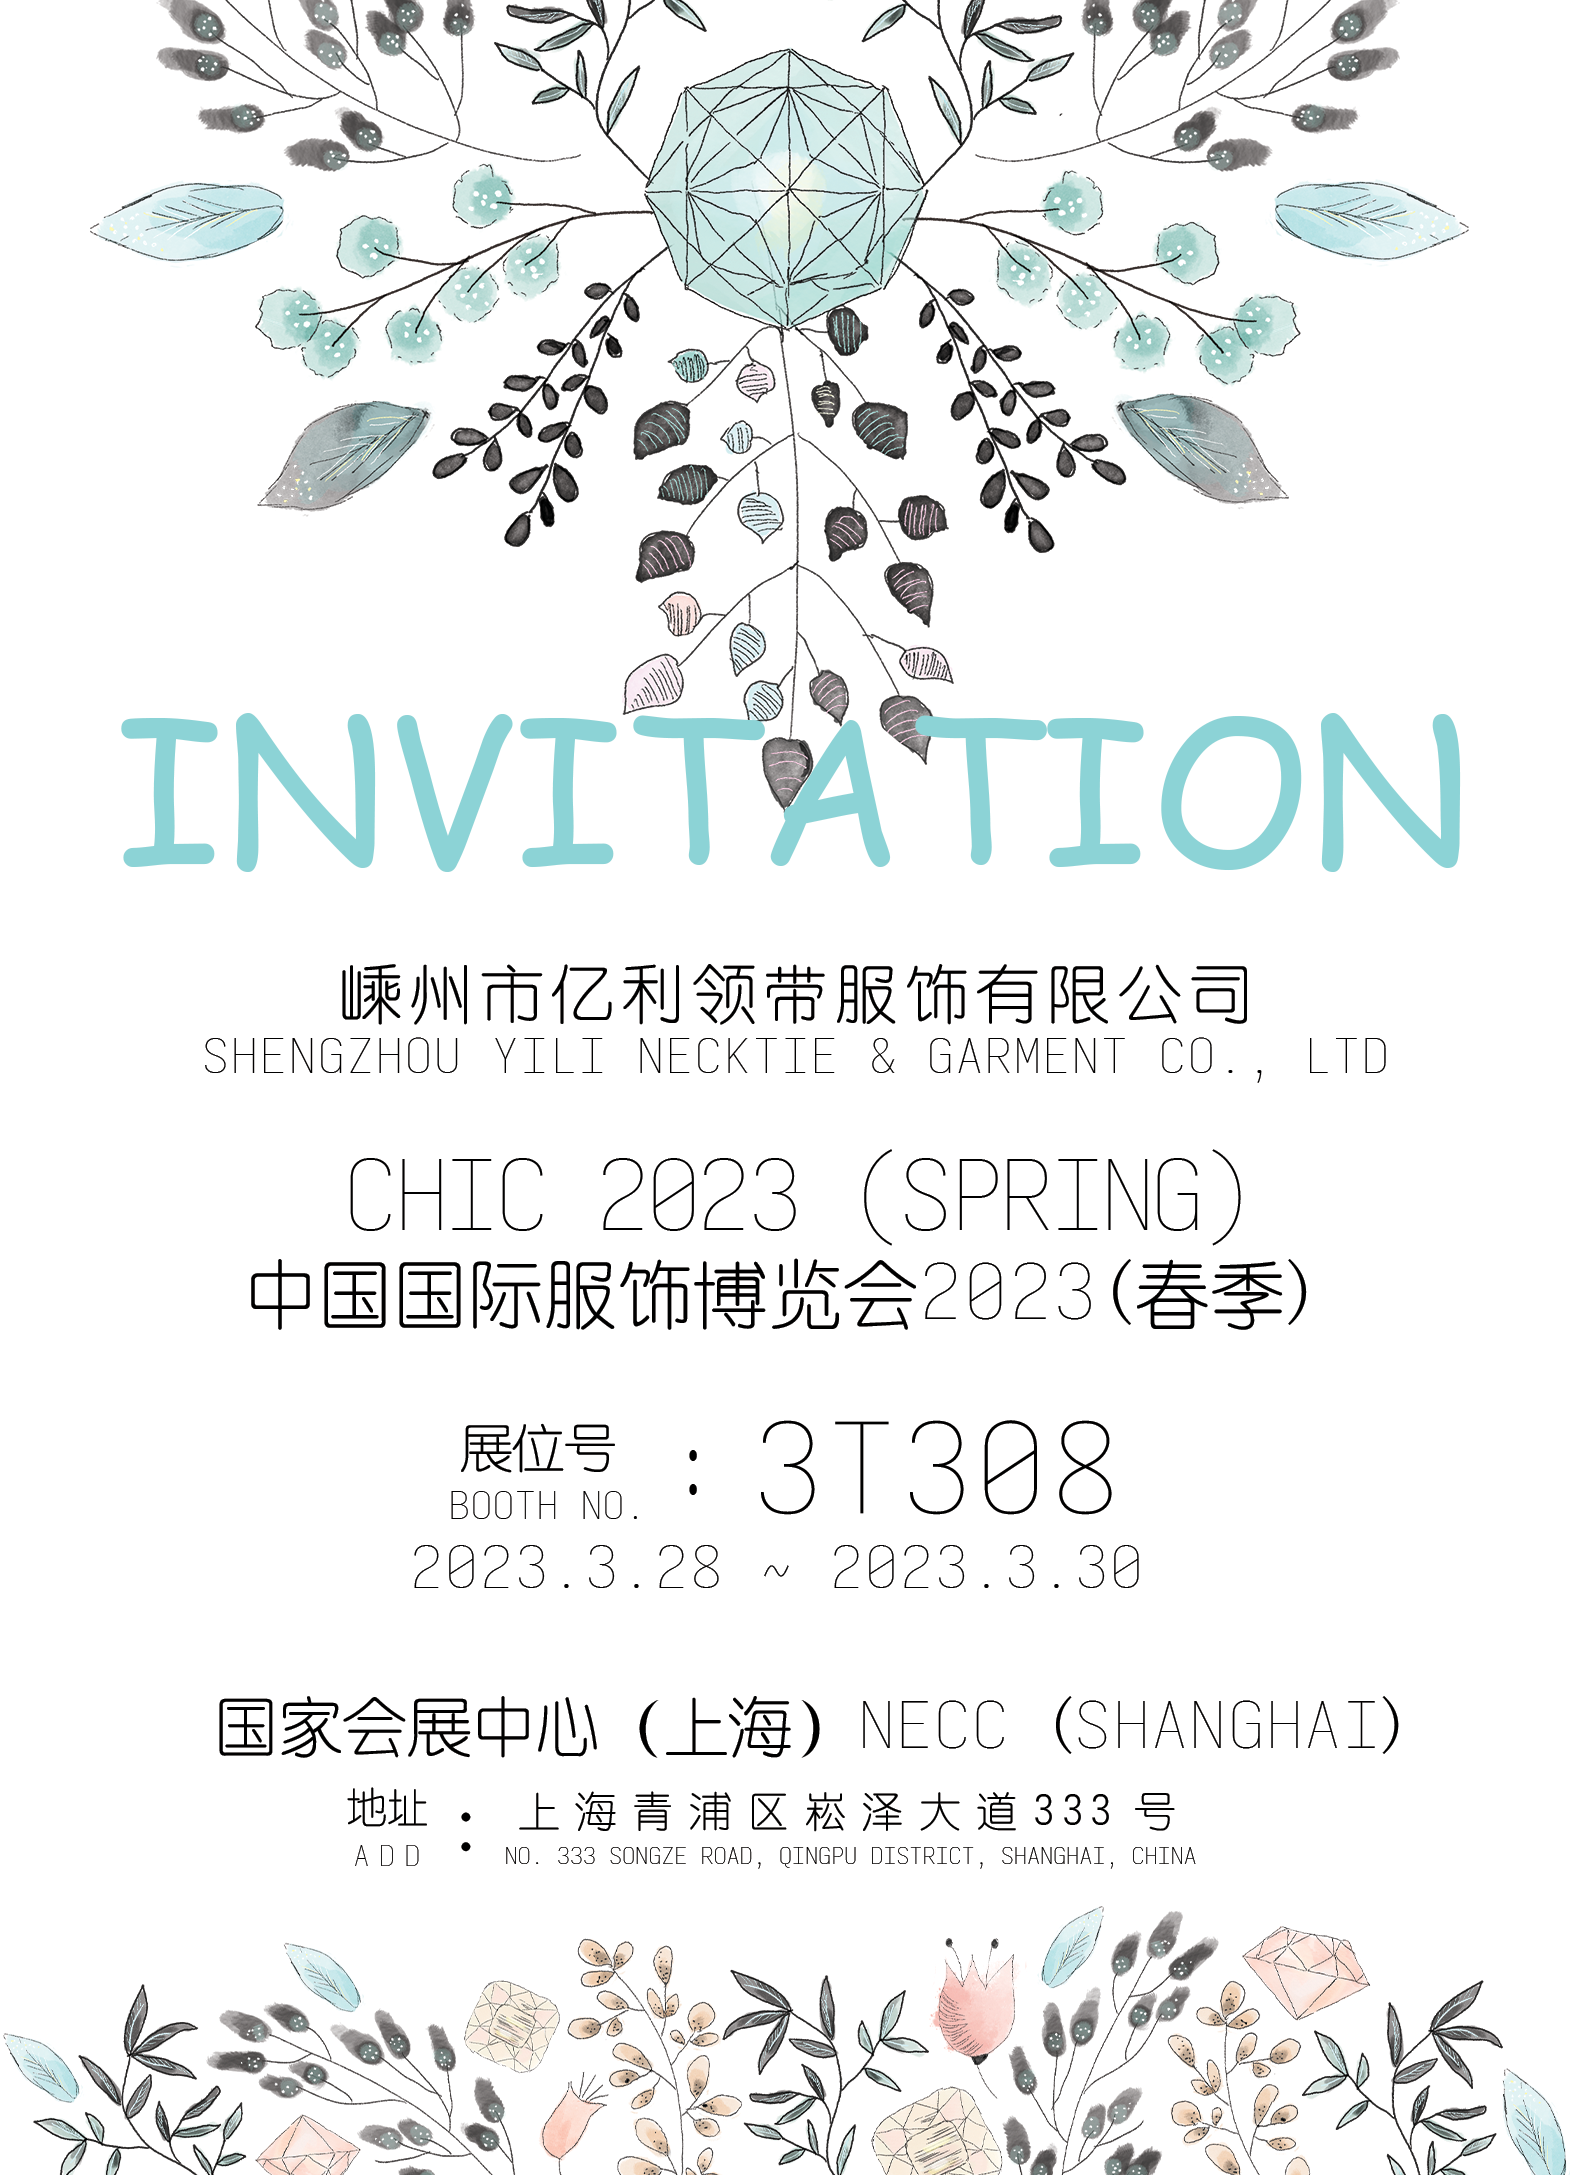 Sizi Çin Uluslararası Giyim ve Aksesuar （CHCA） Fuarı standımızı ziyaret etmeye içtenlikle davet ediyoruz.